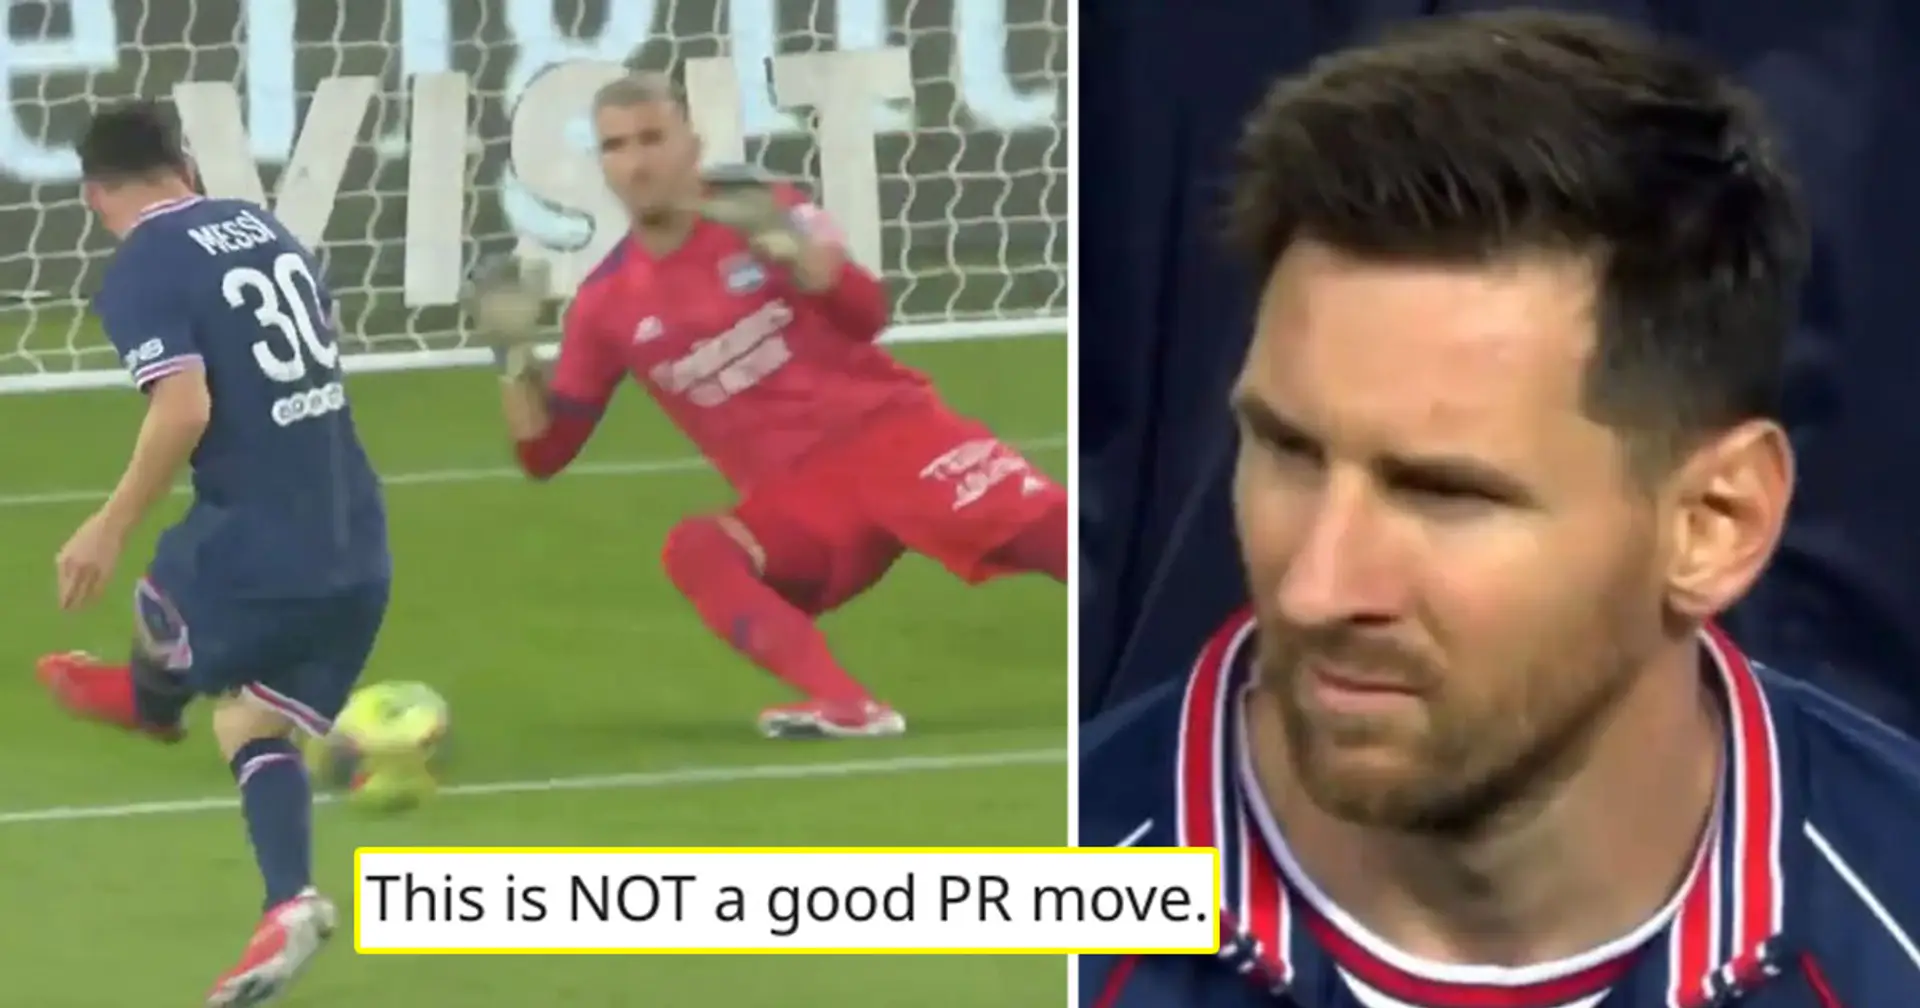 'My apologies. I'm mad': PSG fan slams club for tweeting Messi stats vs Lyon, explains his fury